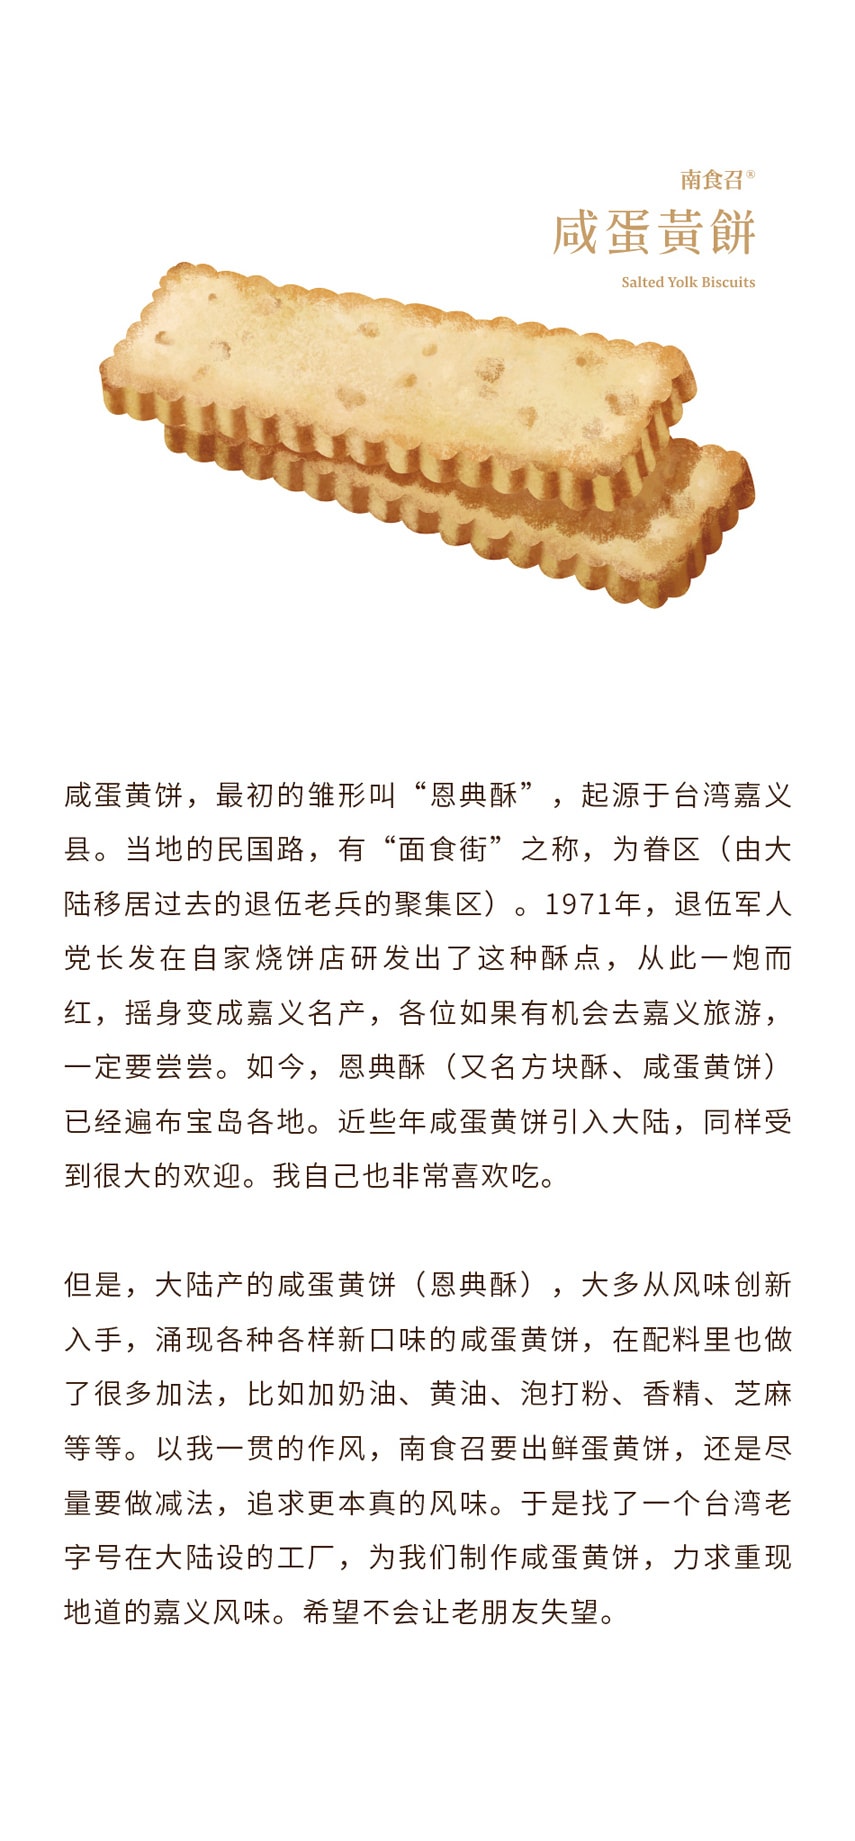 【網紅零食】鹹蛋黃餅乾 100克 本真原味 恩典酥 道地台灣工藝 南食召品牌